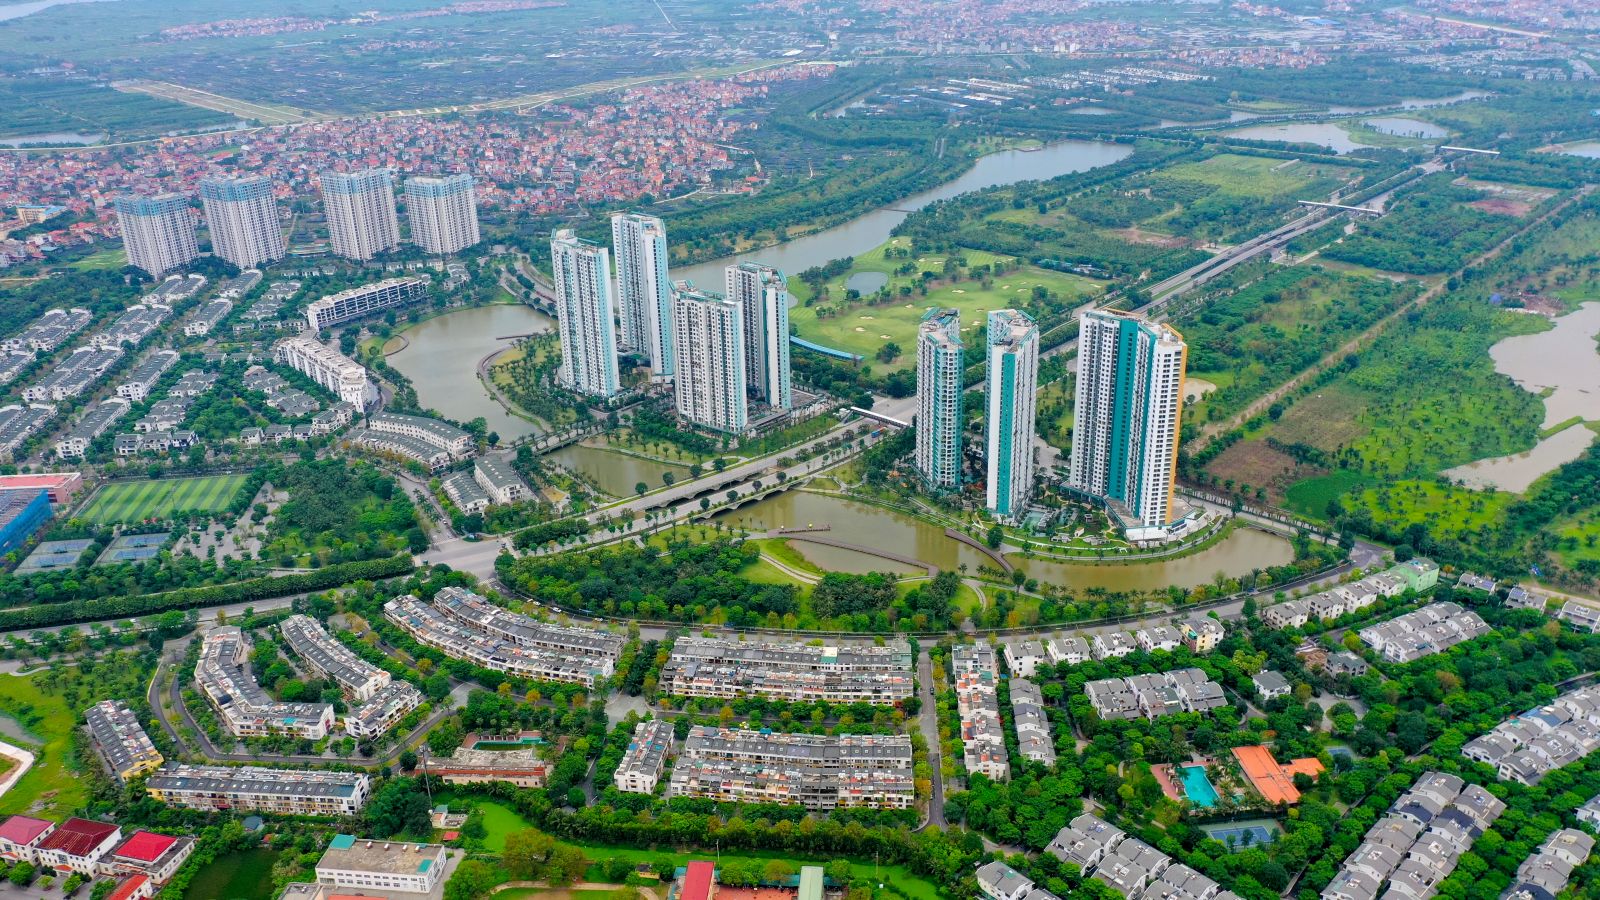 Khu đô thị Ecopark ở phía Đông Thủ đô là một kiểu mẫu điển hình về khu đô thị thông minh và đáng sống